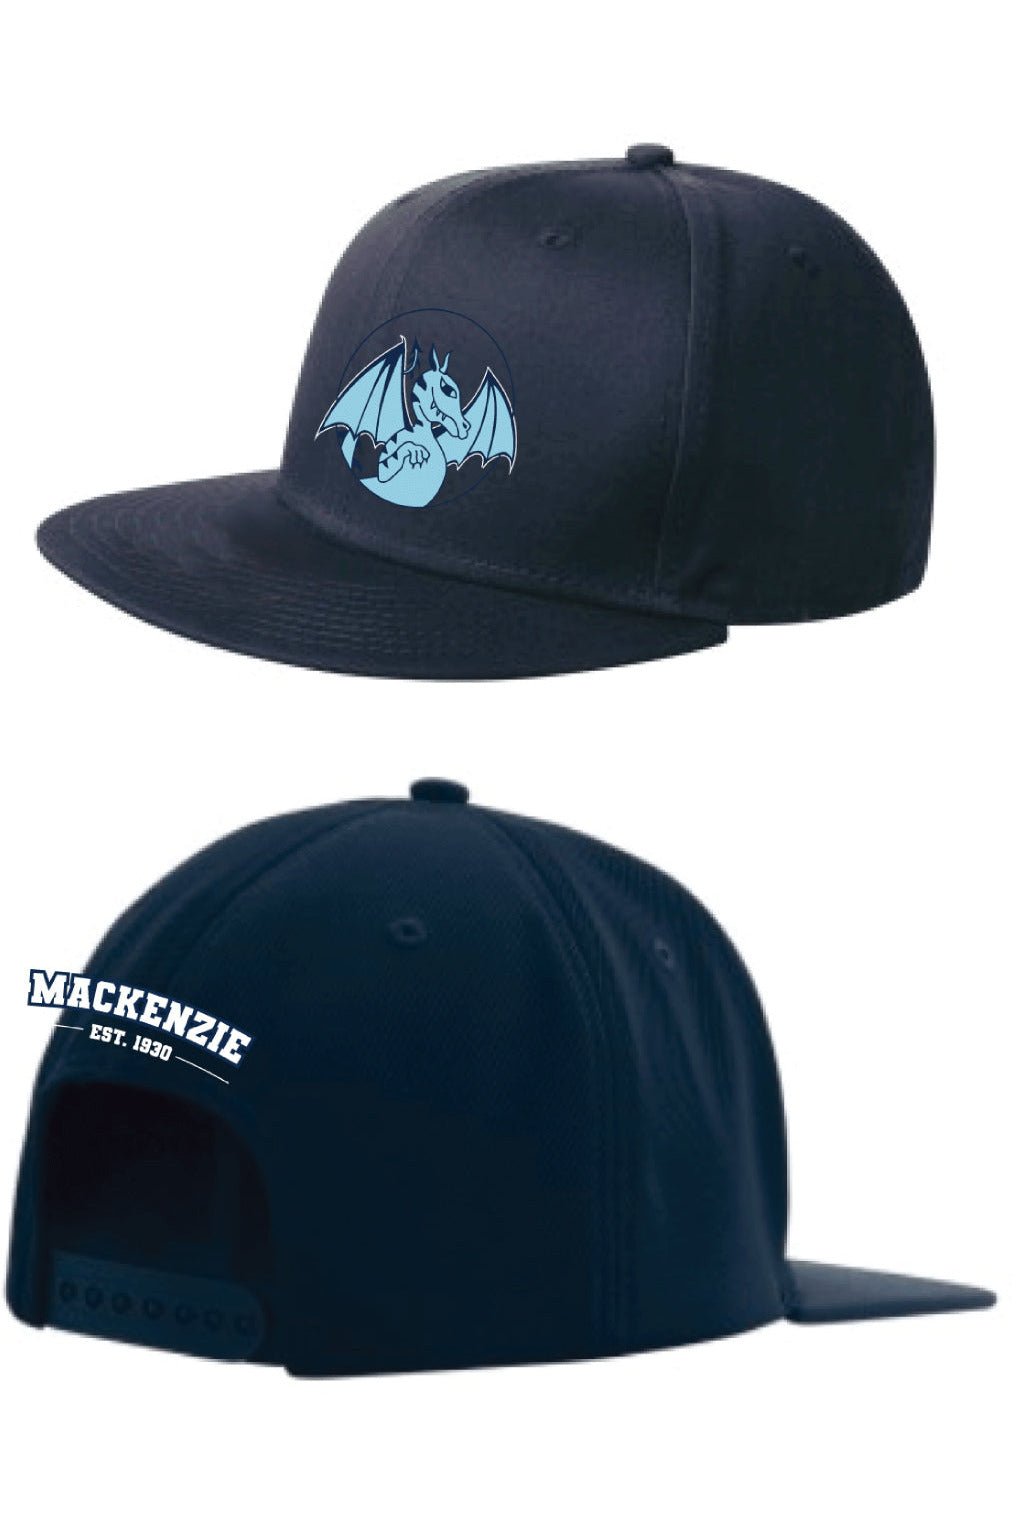 Mackenzie Hat (Crest w/ EST Logo) - Oddball Workshop